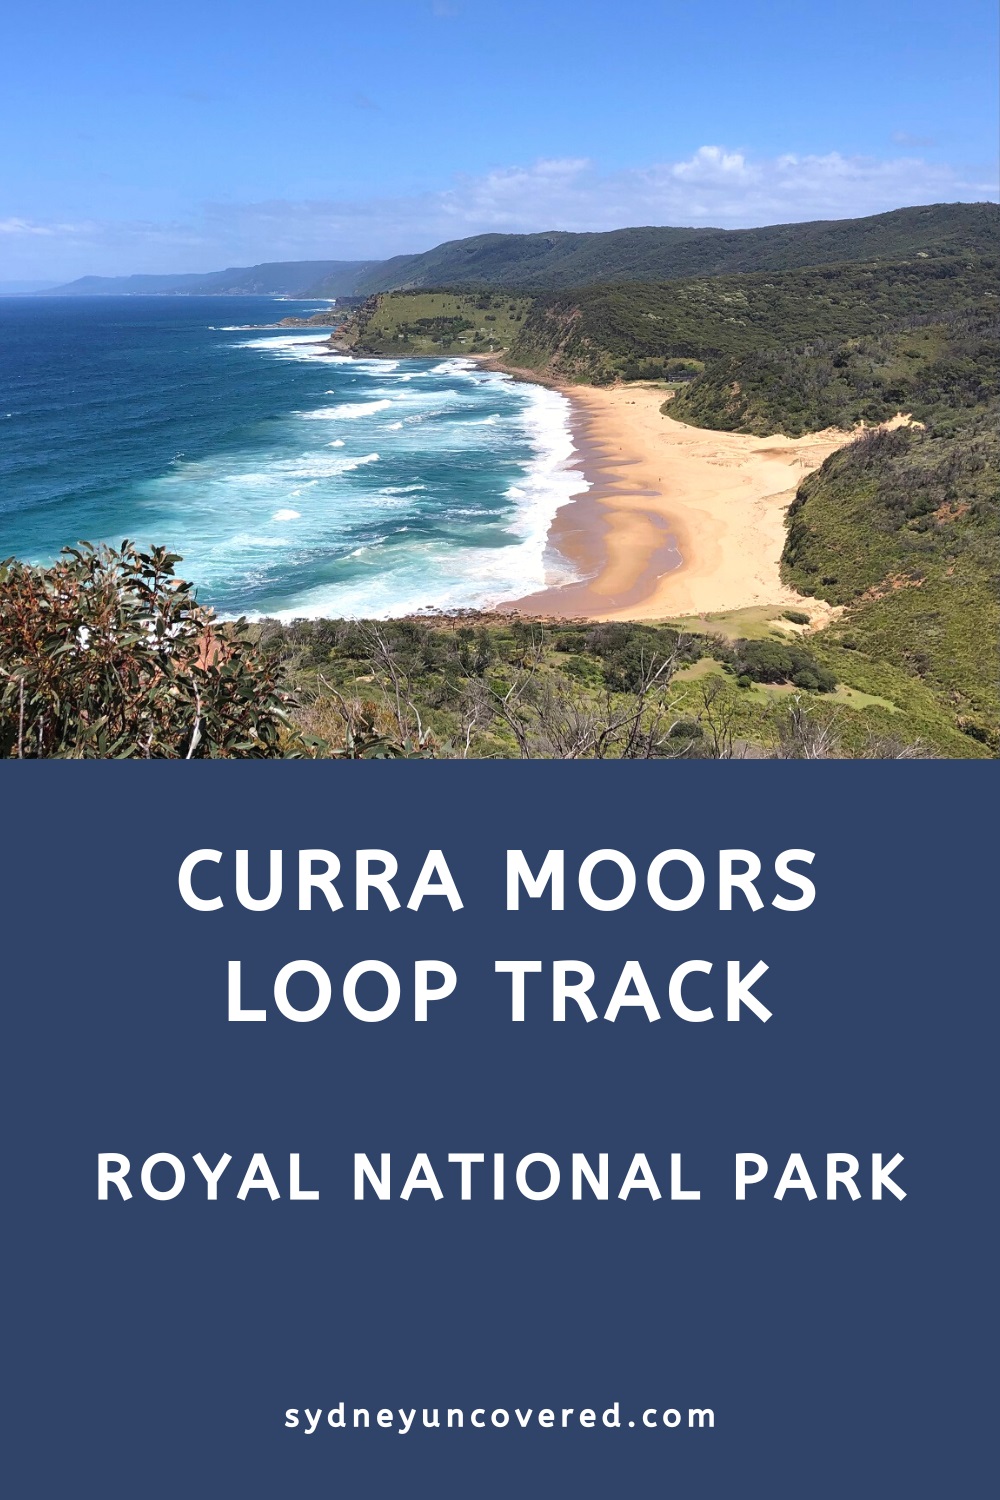 Curra Moors Loop Track in Royal National Park